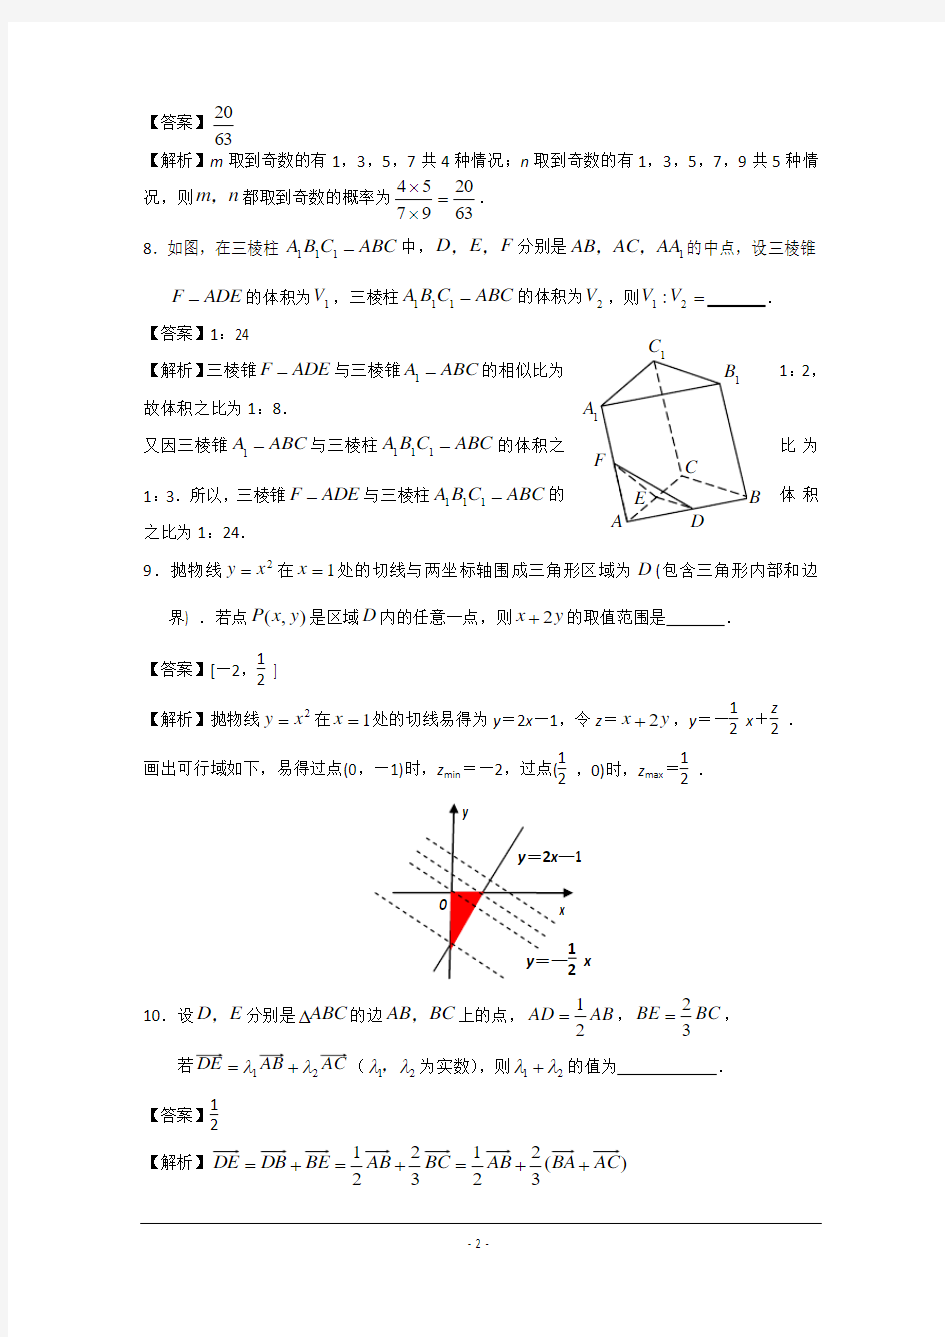 2013年江苏省高考数学试卷及答案(Word解析版)